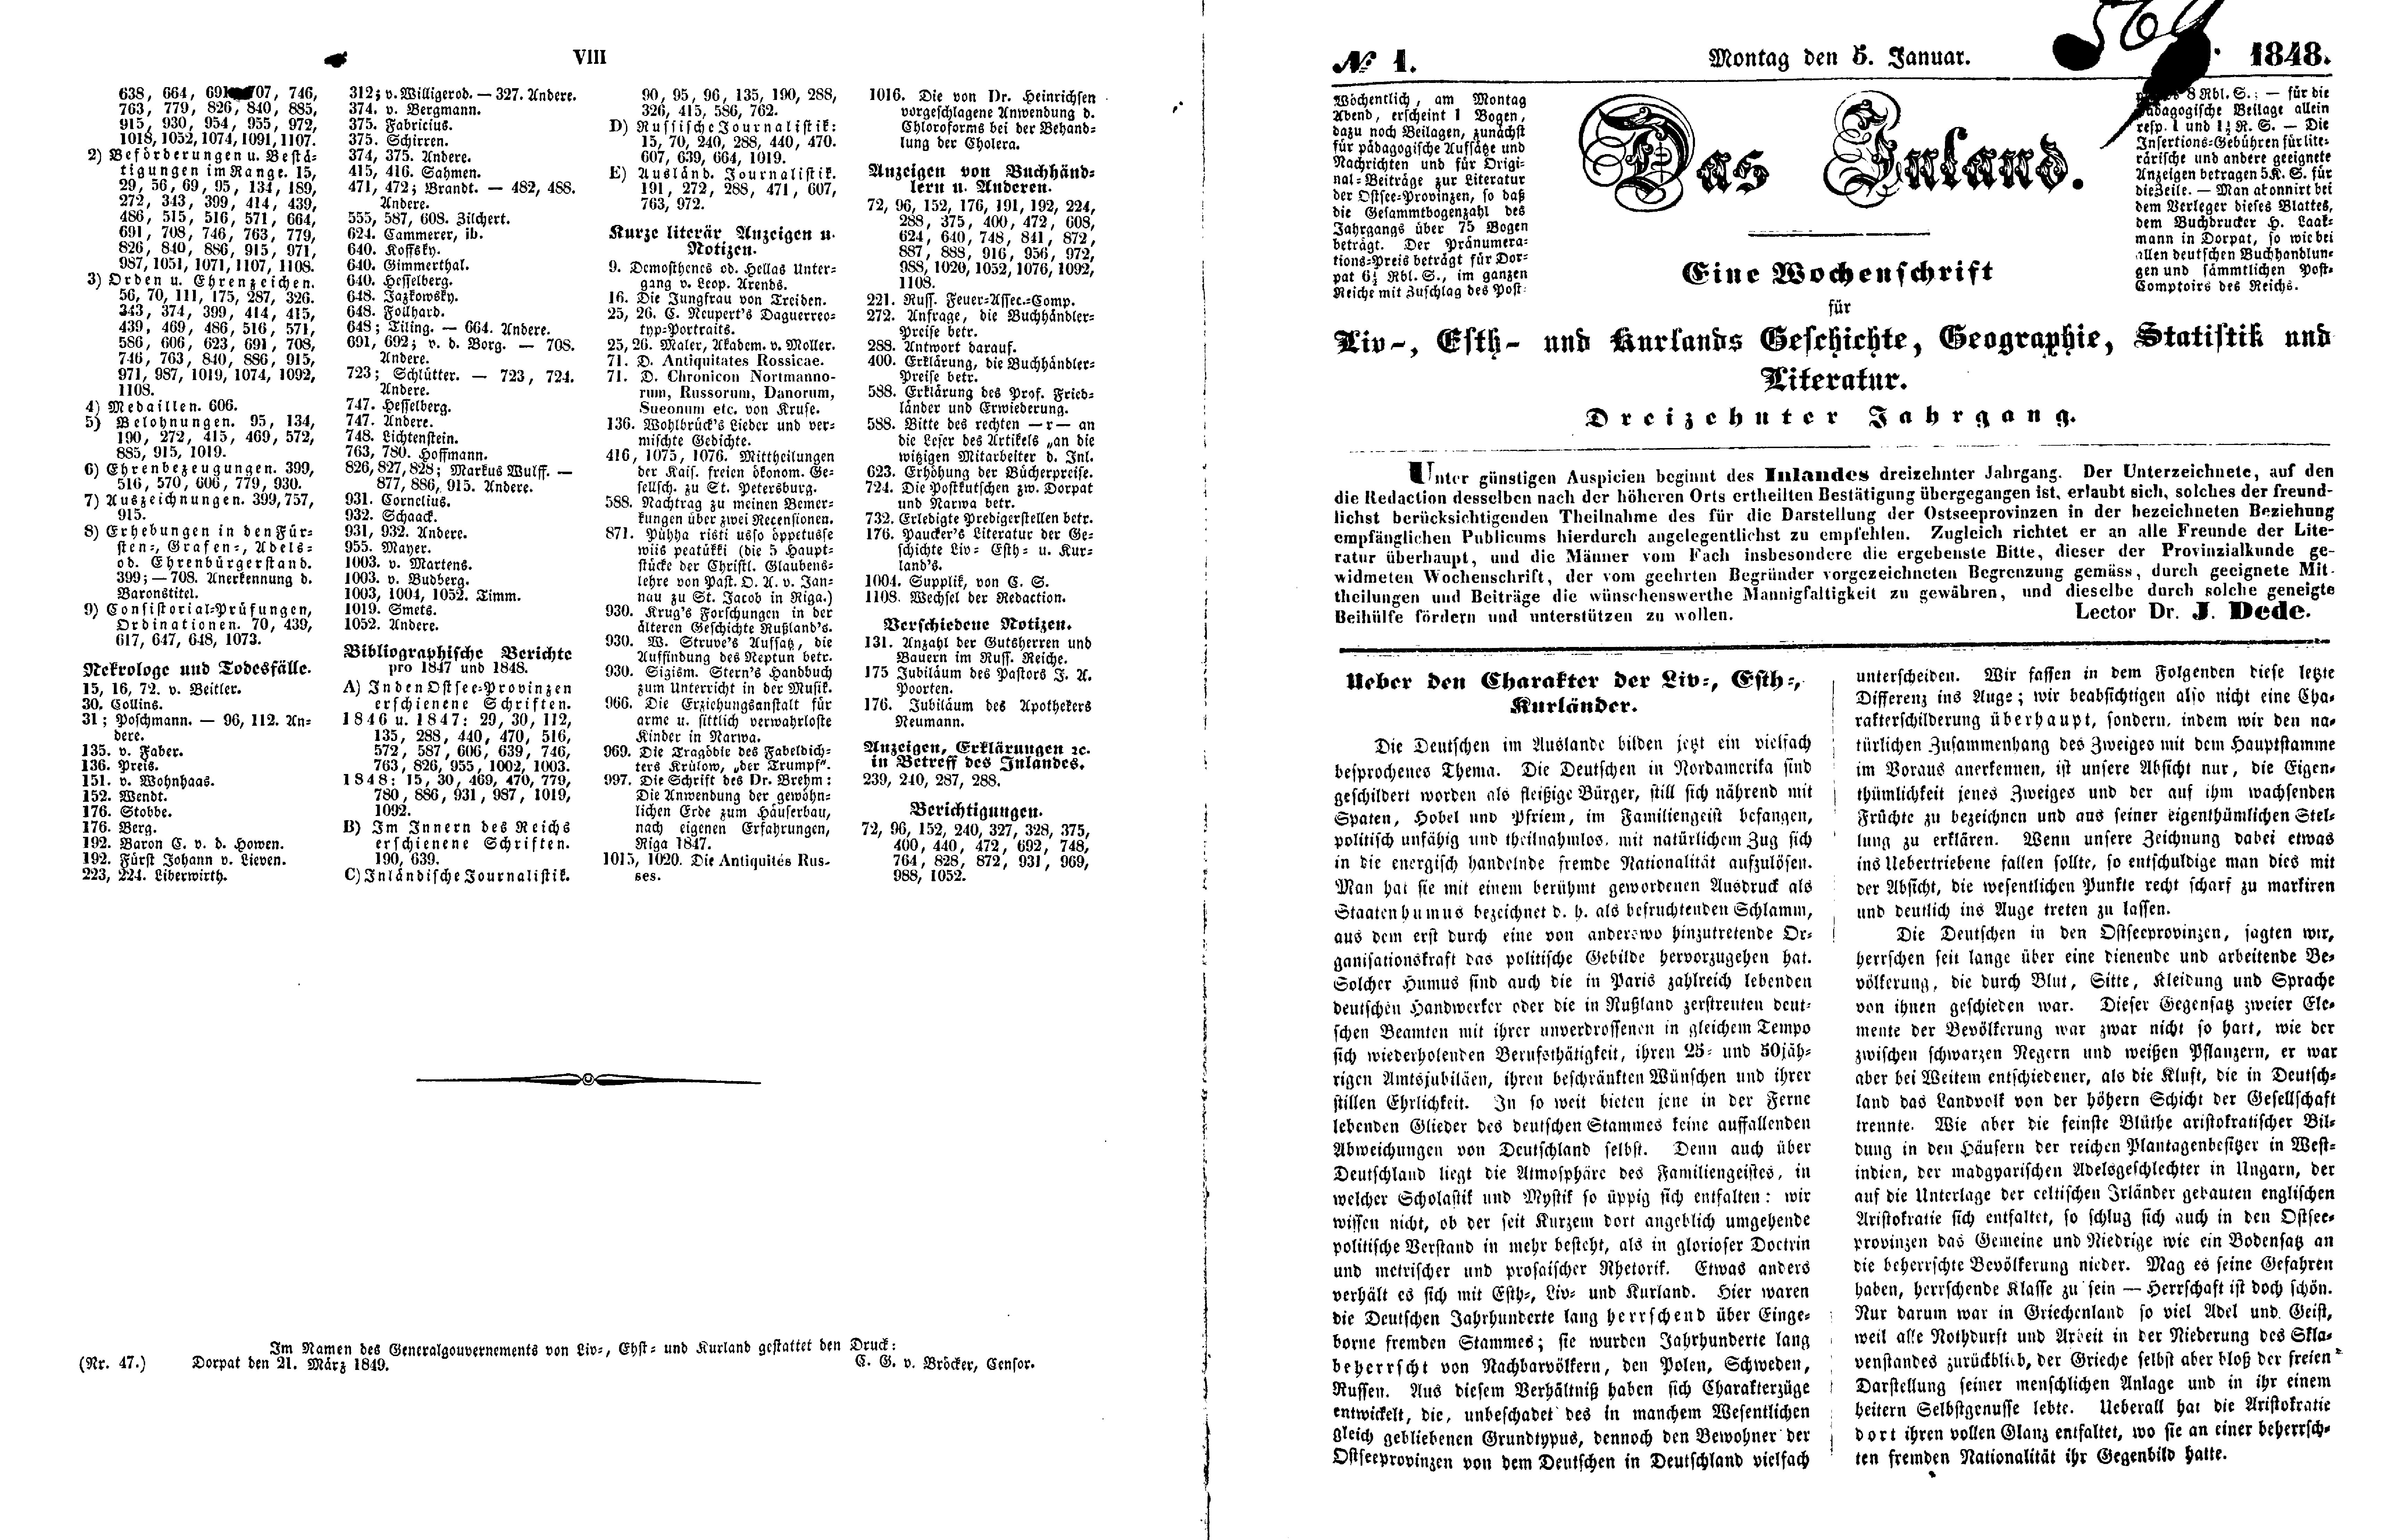 Das Inland [13] (1848) | 5. (VIII-2) Index, Main body of text